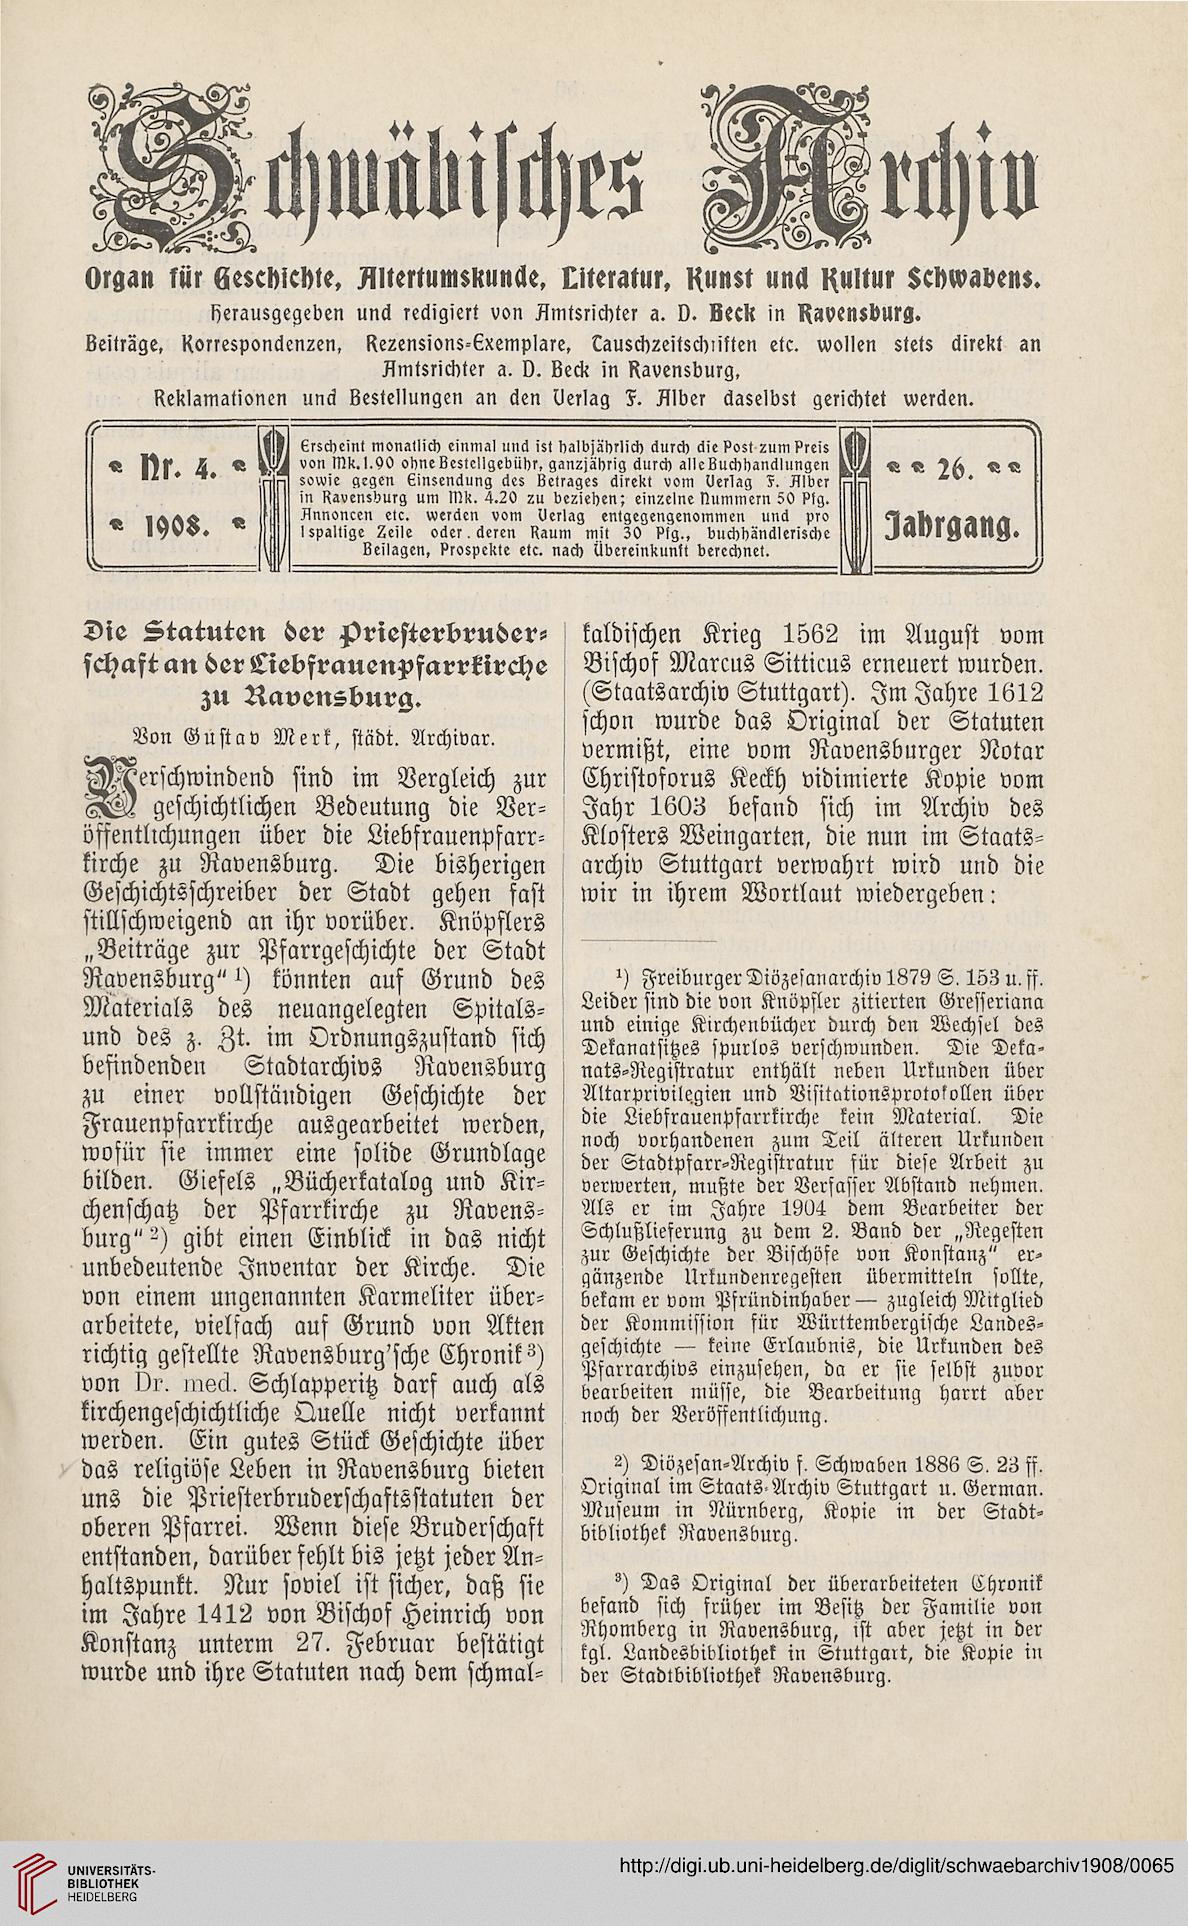 Beck Paul A Hrsg Schwabisches Archiv Organ Fur Geschichte Altertumskunde Literatur Kunst Und Kultur Schwabens 26 1908